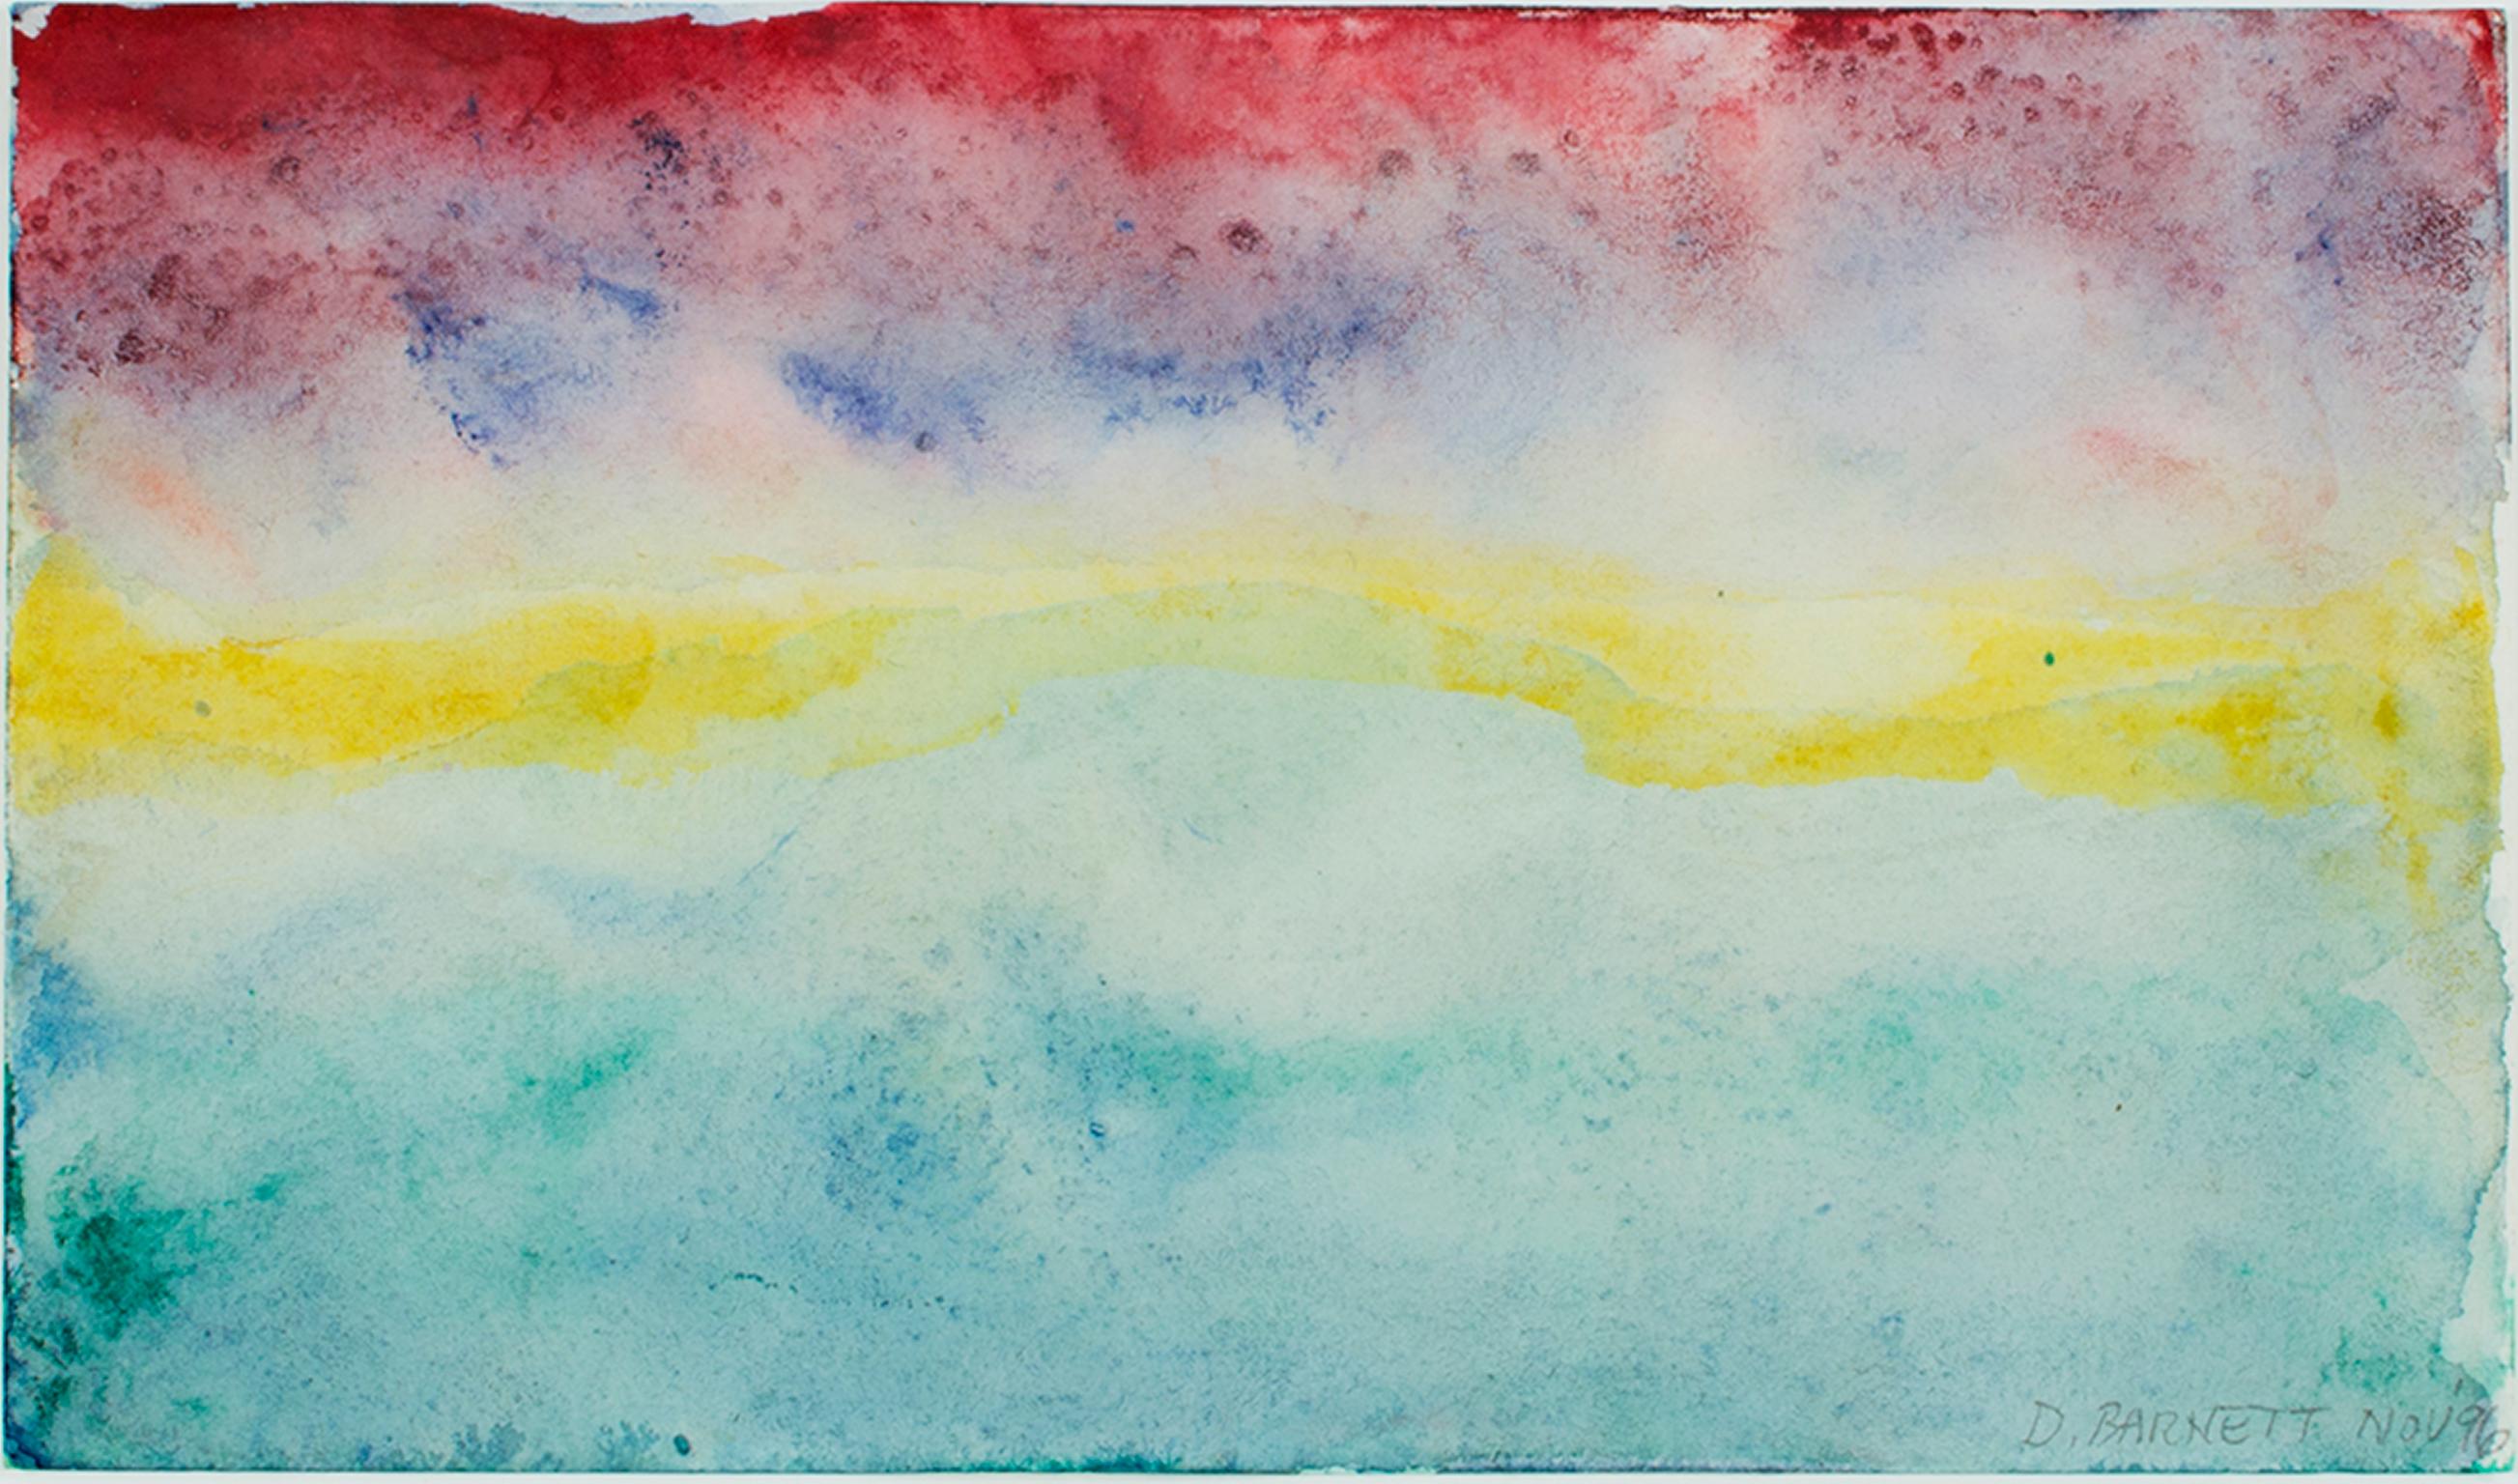 "Beaver Lake Sunset Nov. 11, 1996" ist ein Original-Aquarell auf antikem J. Whatman Papier von David Barnett, signiert mit Bleistift in der unteren rechten Ecke. Der Sonnenuntergang ist in abstrakten Streifen dargestellt, die unten blaugrün und oben